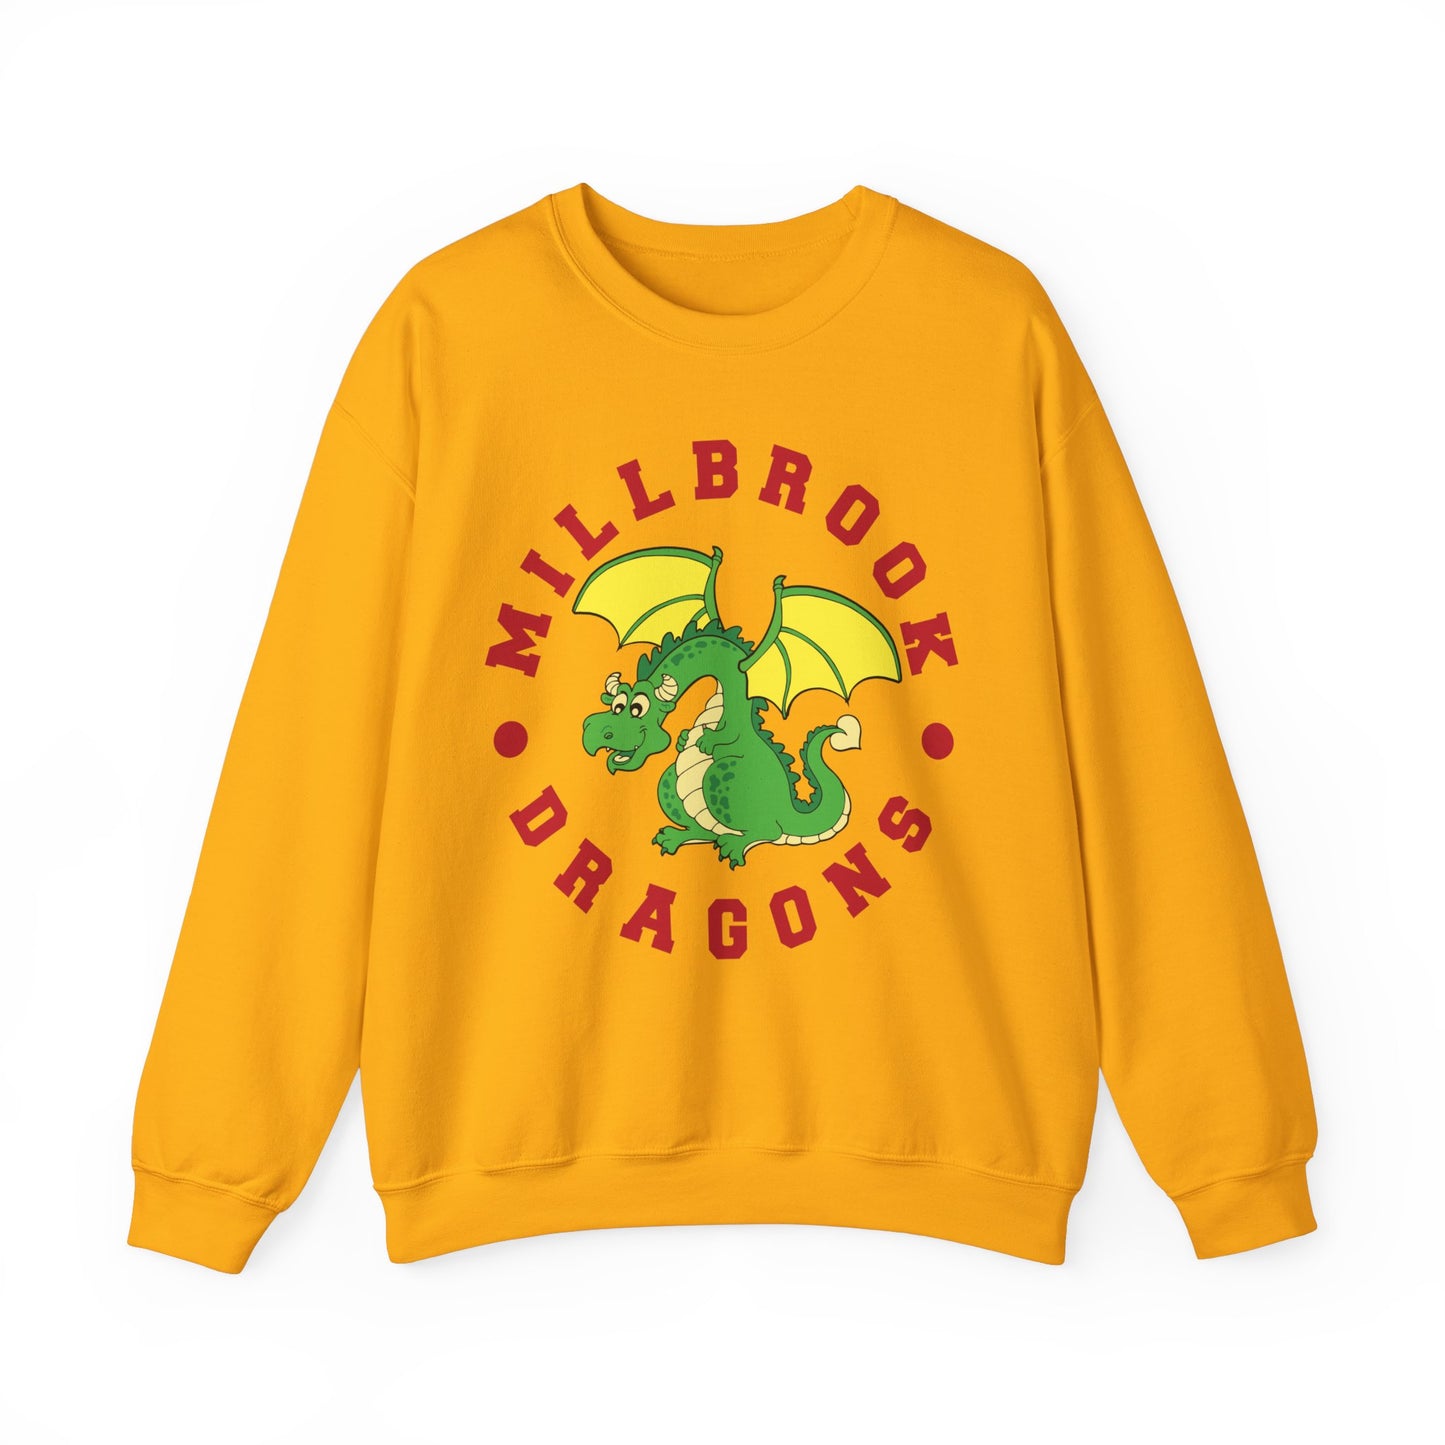 Millbrook Dragons Mascot Crewneck - Adult